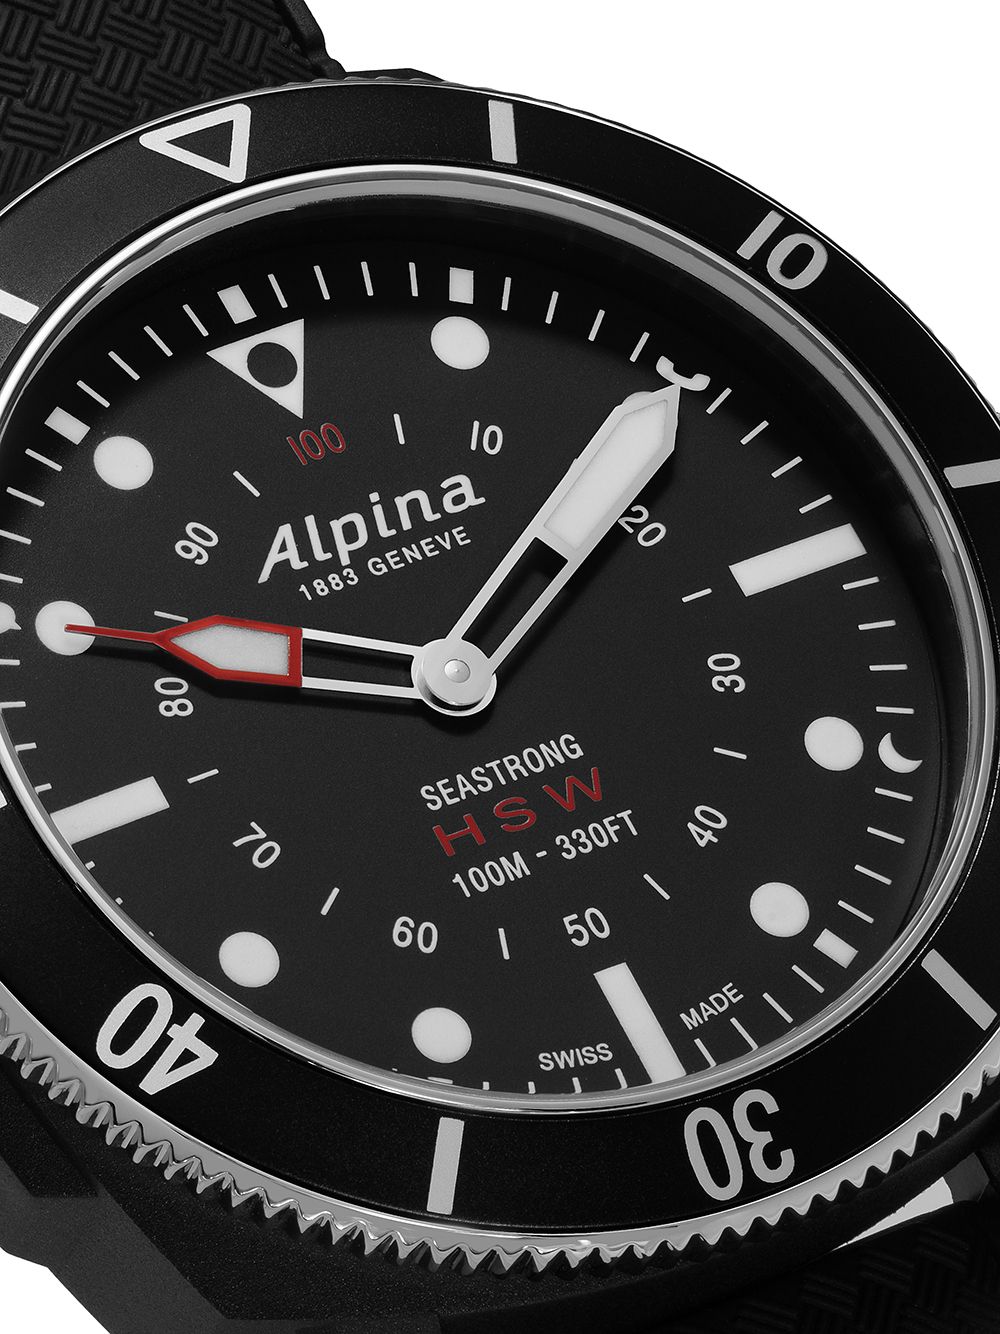 фото Alpina наручные часы seastrong horological smartwatch 44 мм